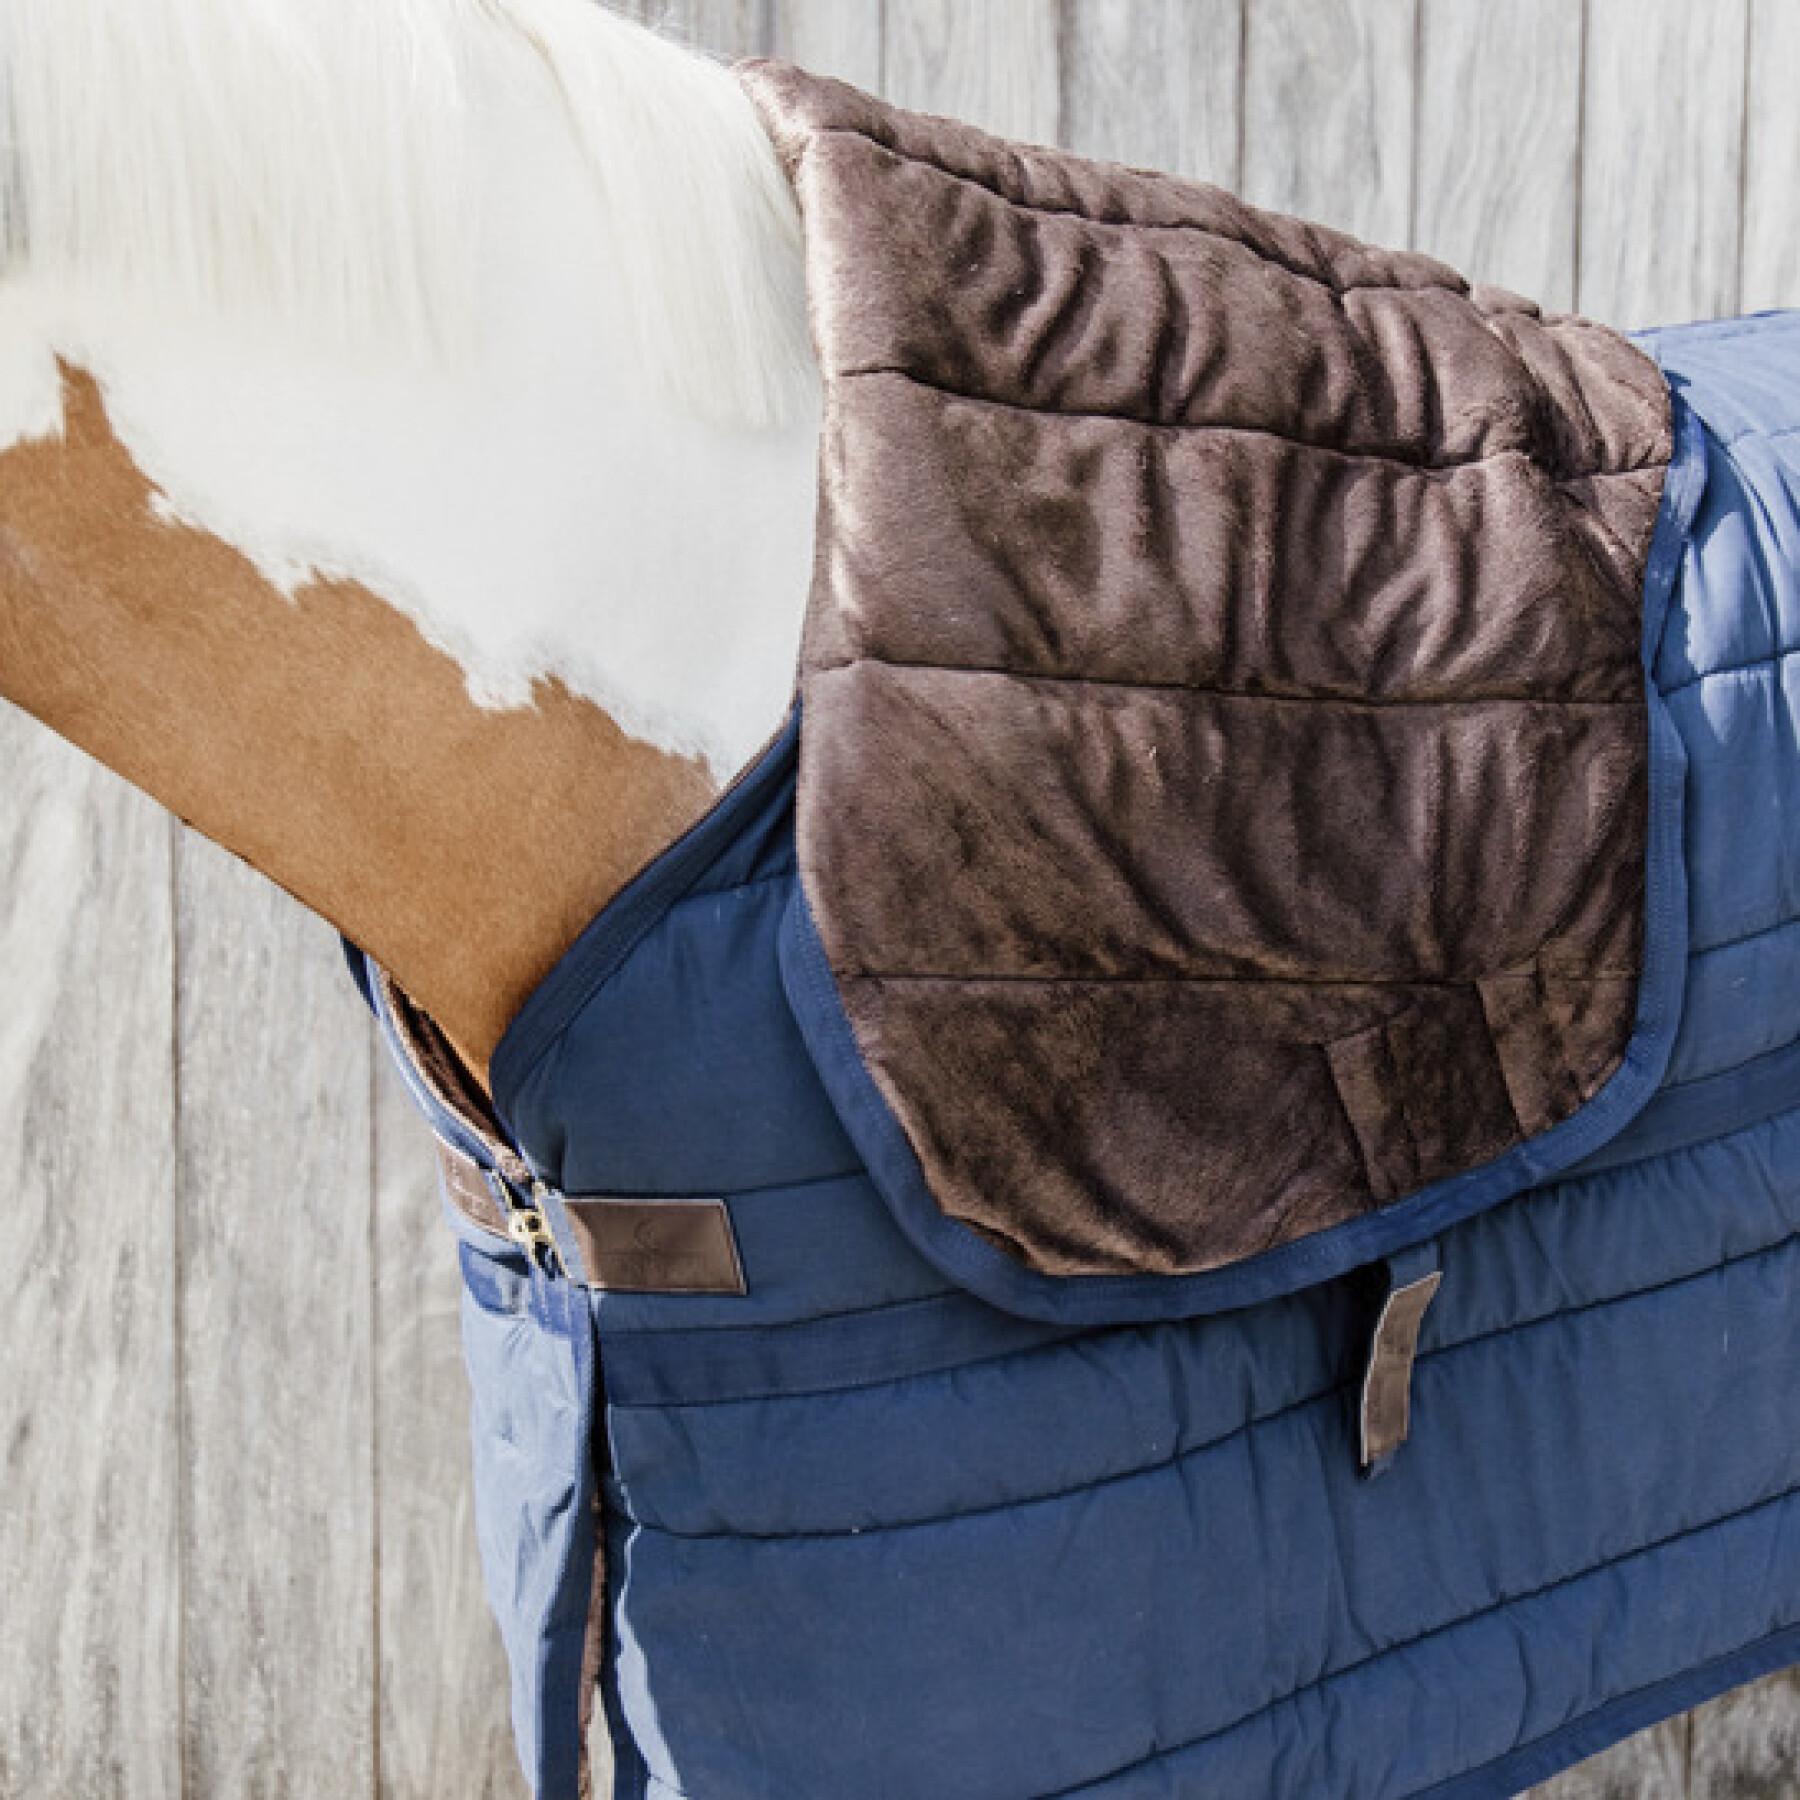 Sous-couverture pour cheval avec couvre cou Kentucky Skin Friendly 150g